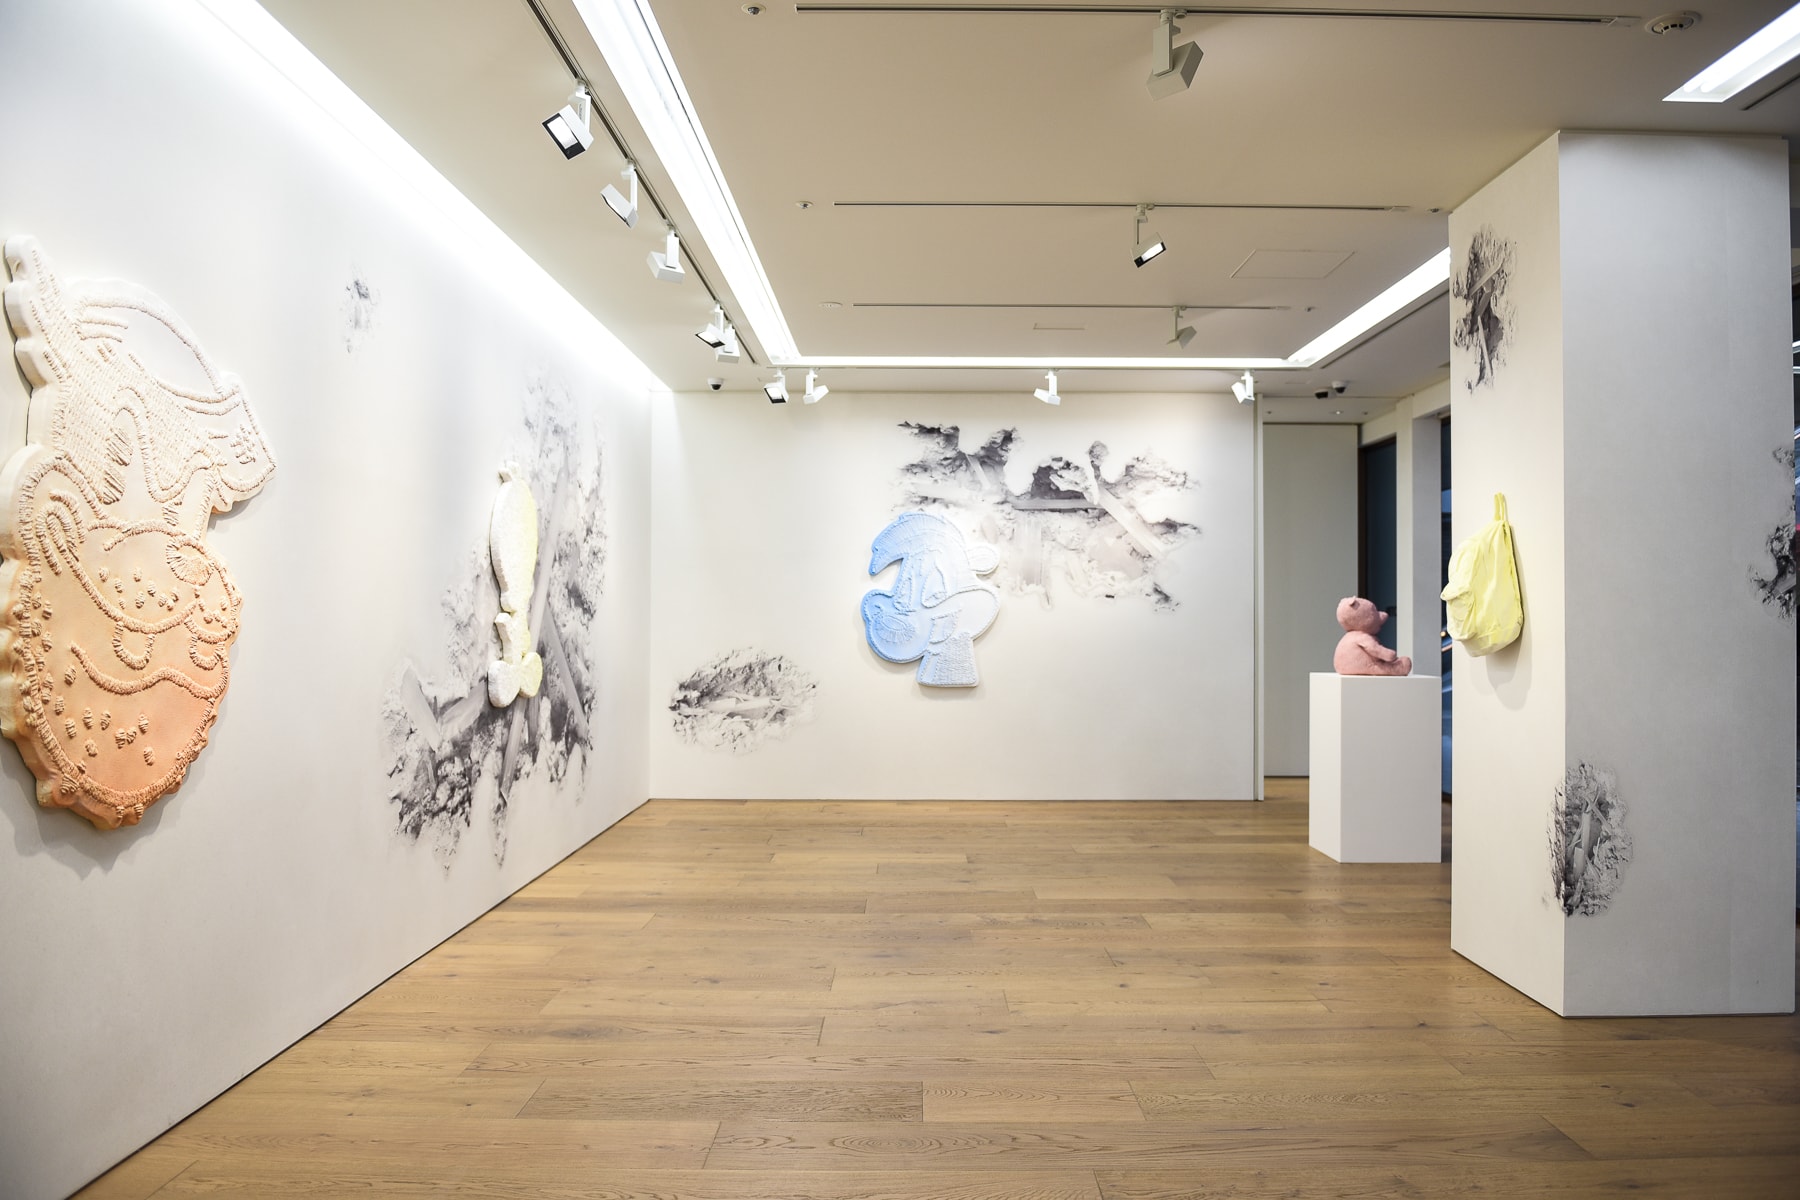 日本で開催中のダニエル・アーシャムの個展 “Architecture Anomalie” と “Color Shadows” に潜入 『NANZUKA』と『Perrotin Tokyo』の2ヶ所で同時開催されている“純白の非現実世界”と“色を纏ったアーティストの思い出”